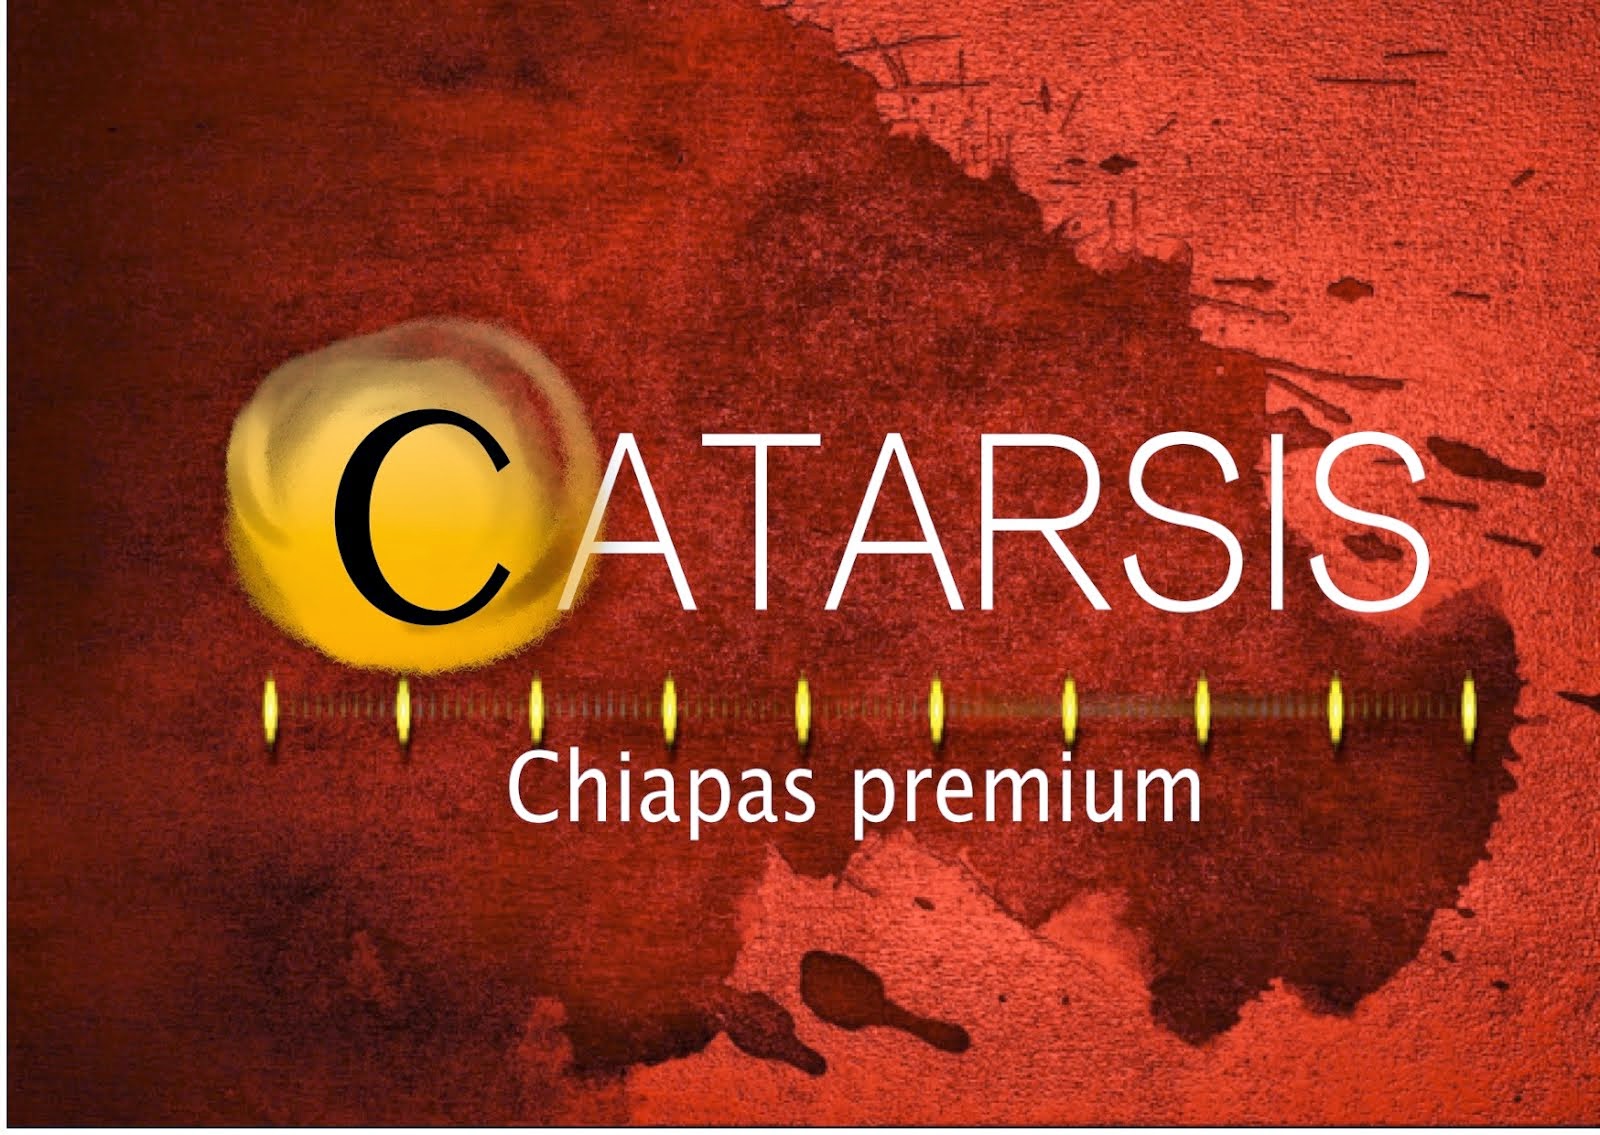 Catarsis Premium